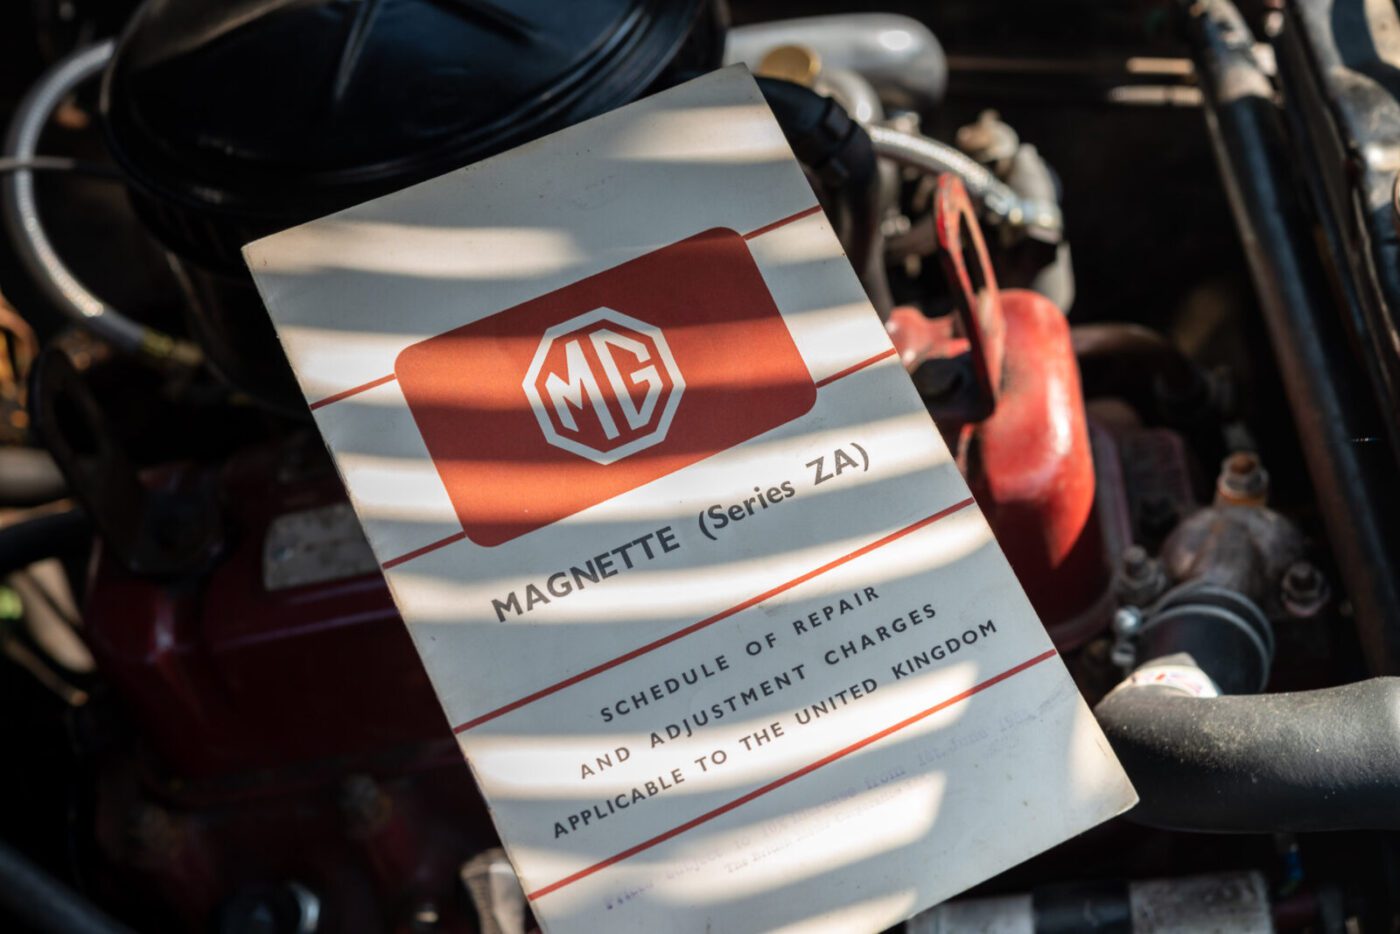 MG Magnette workshop manual